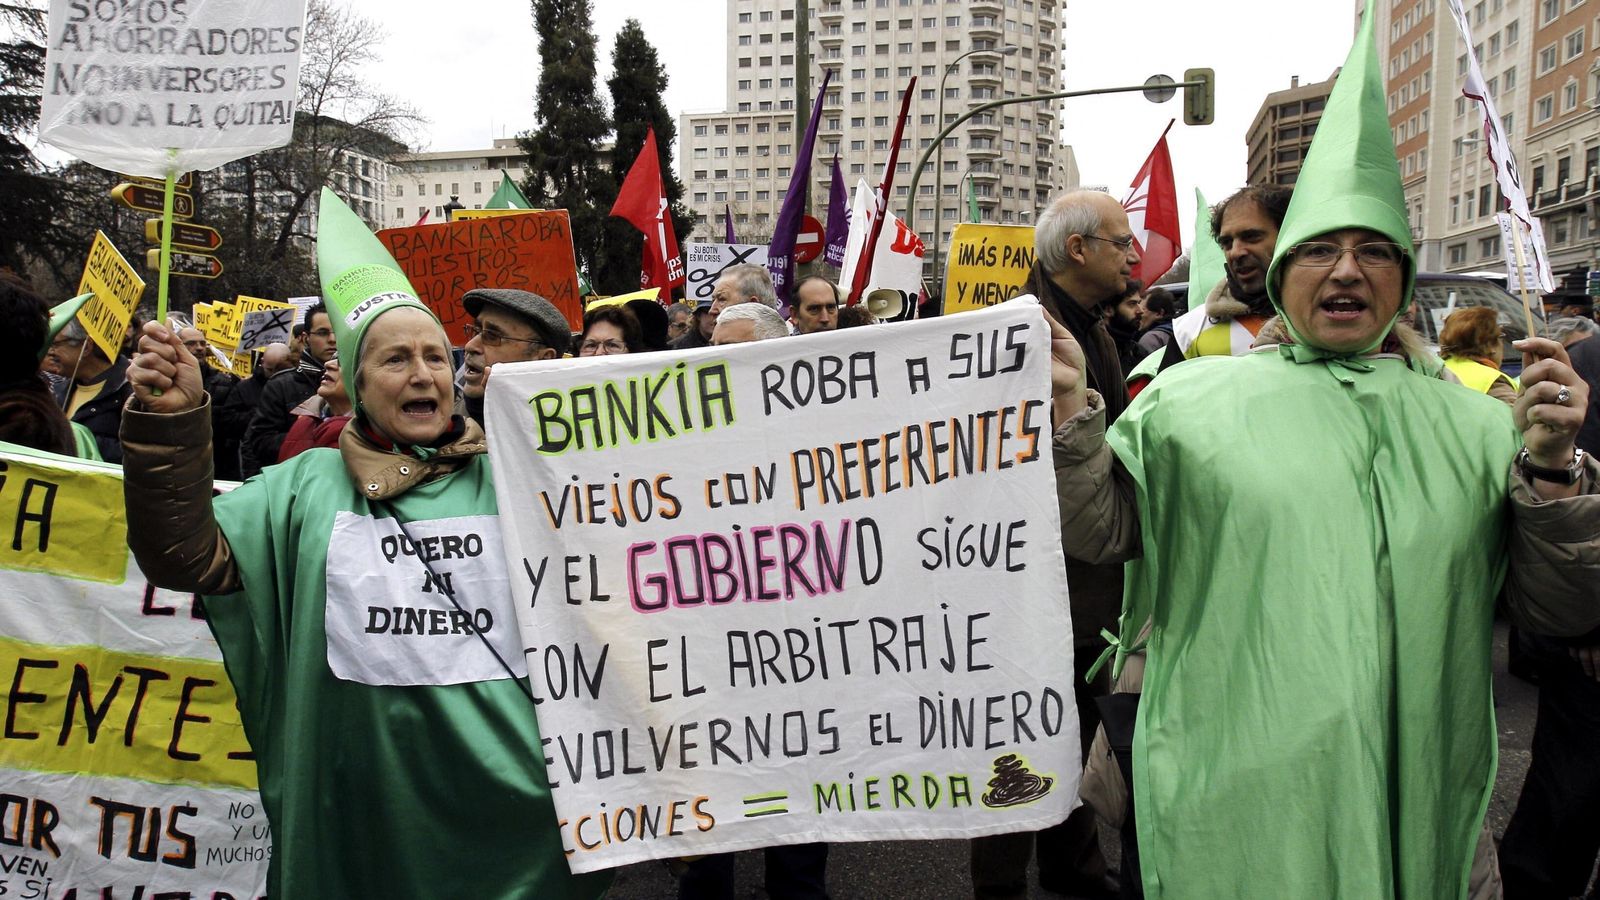 Foto: Manifestación de afectados por las preferentes de Bankia. (Efe)